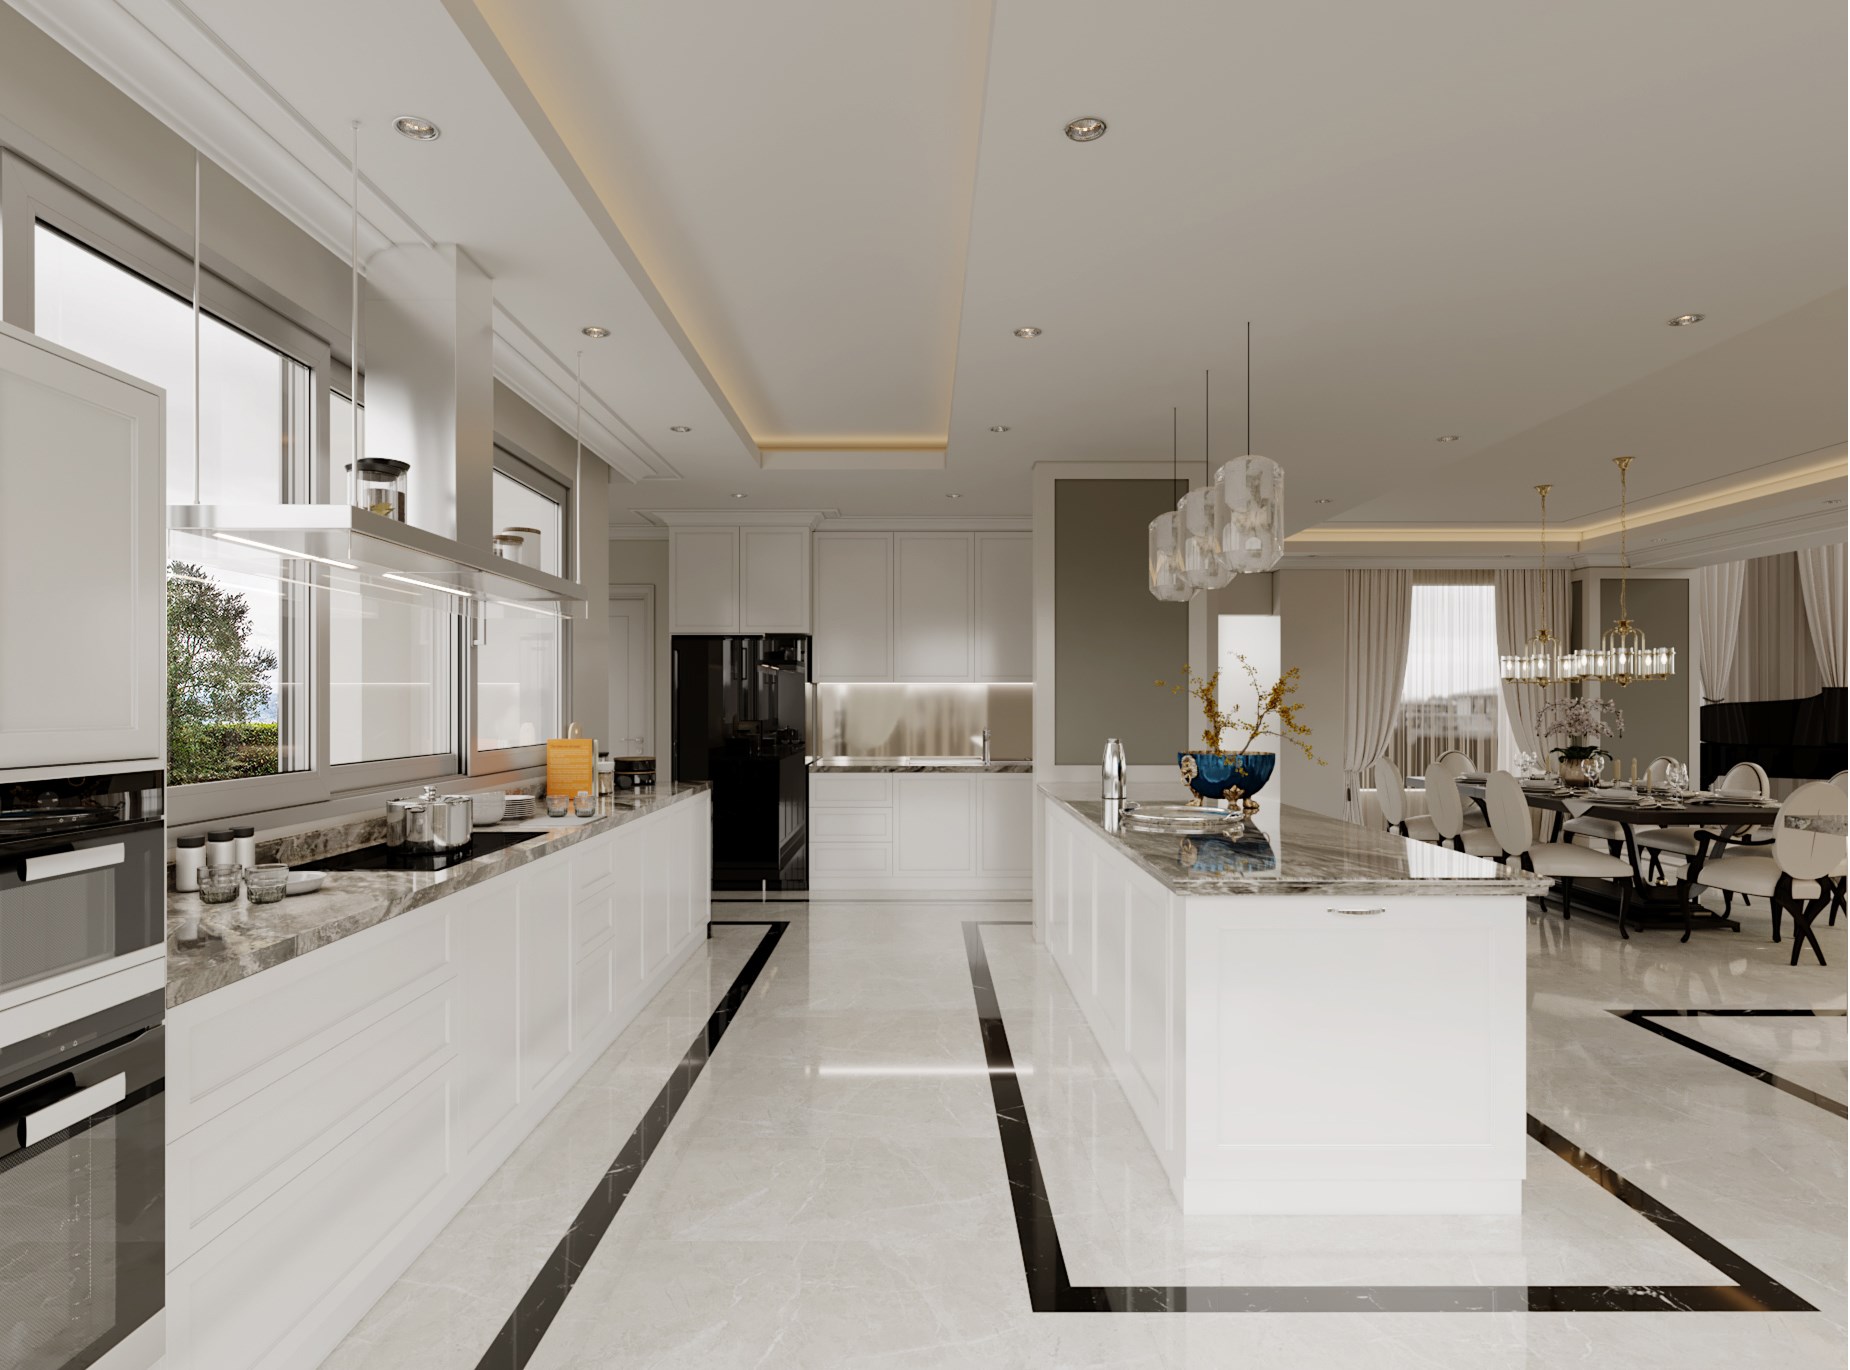 Không gian bếp rộng rãi và đẹp đẽ với gam màu trắng chủ đạo cùng điểm nhấn đen lạ mắt